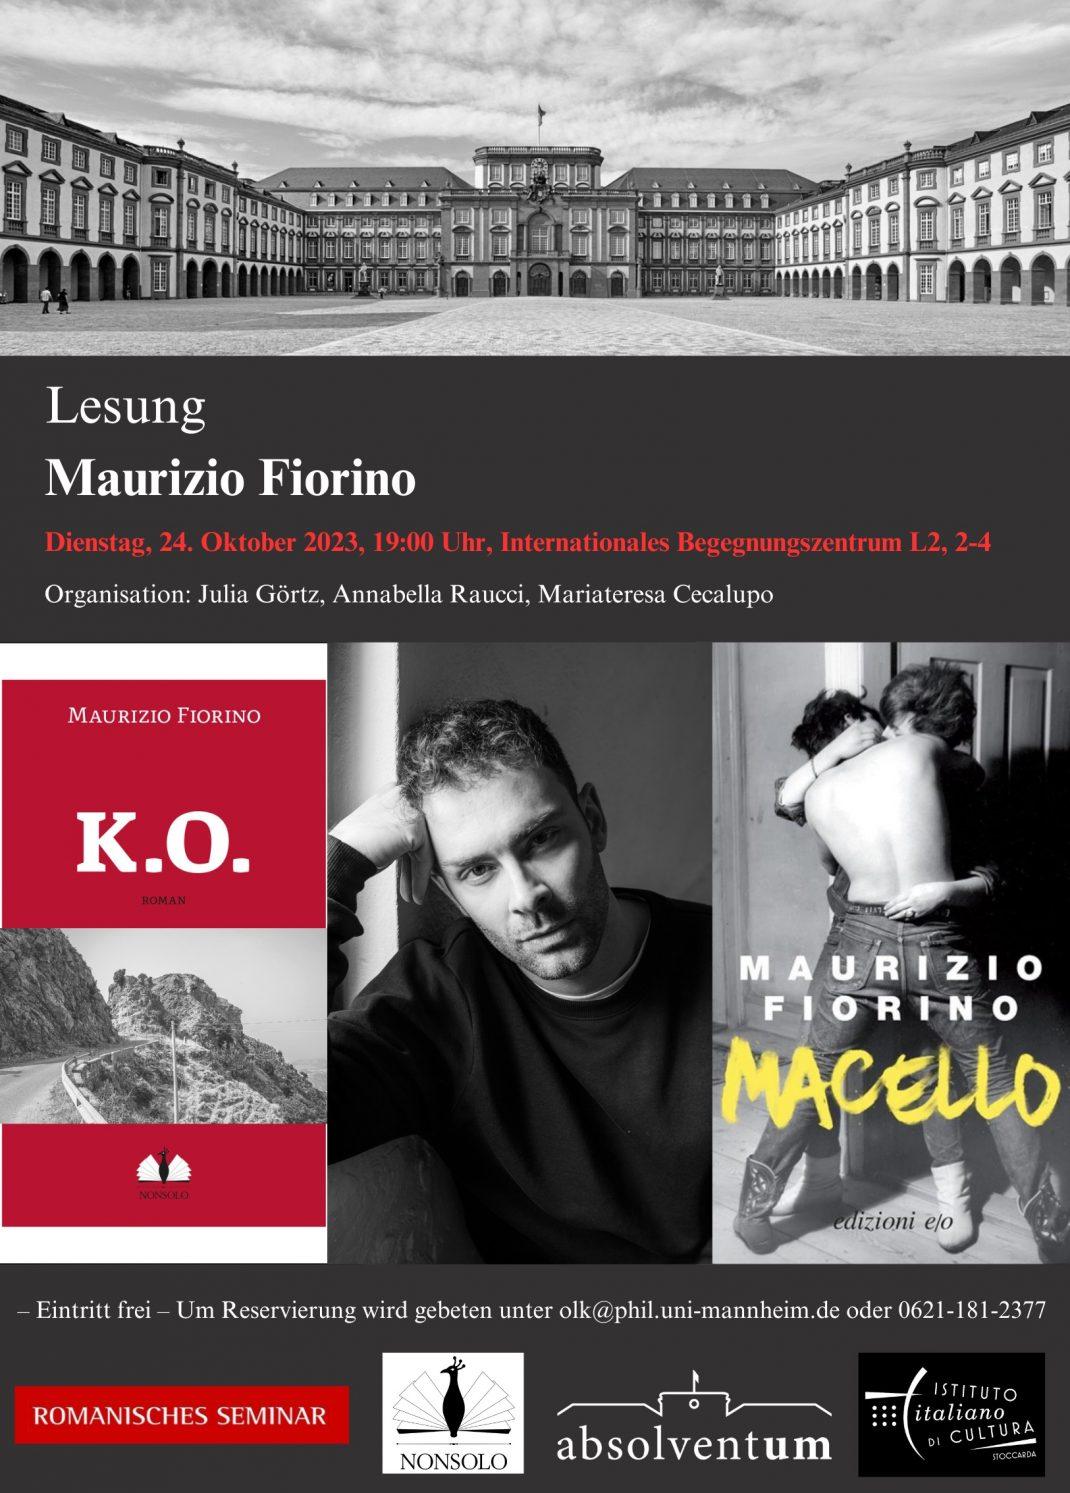 Lesung im Internationalen Begegnungszentrum mit Maurizio Fiorino 